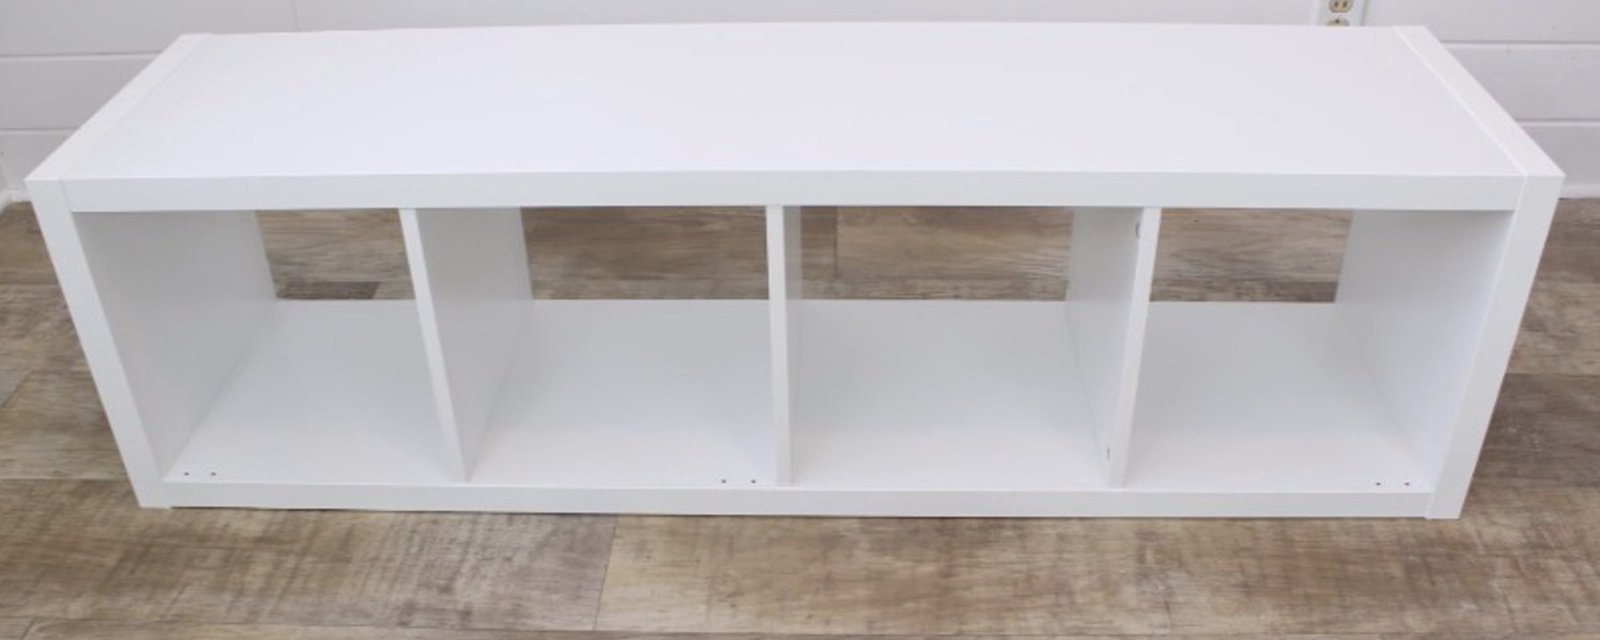 1 modèle d'étagère Ikea, 12 incroyables transformations! Un meuble pour chaque pièce de la maison!